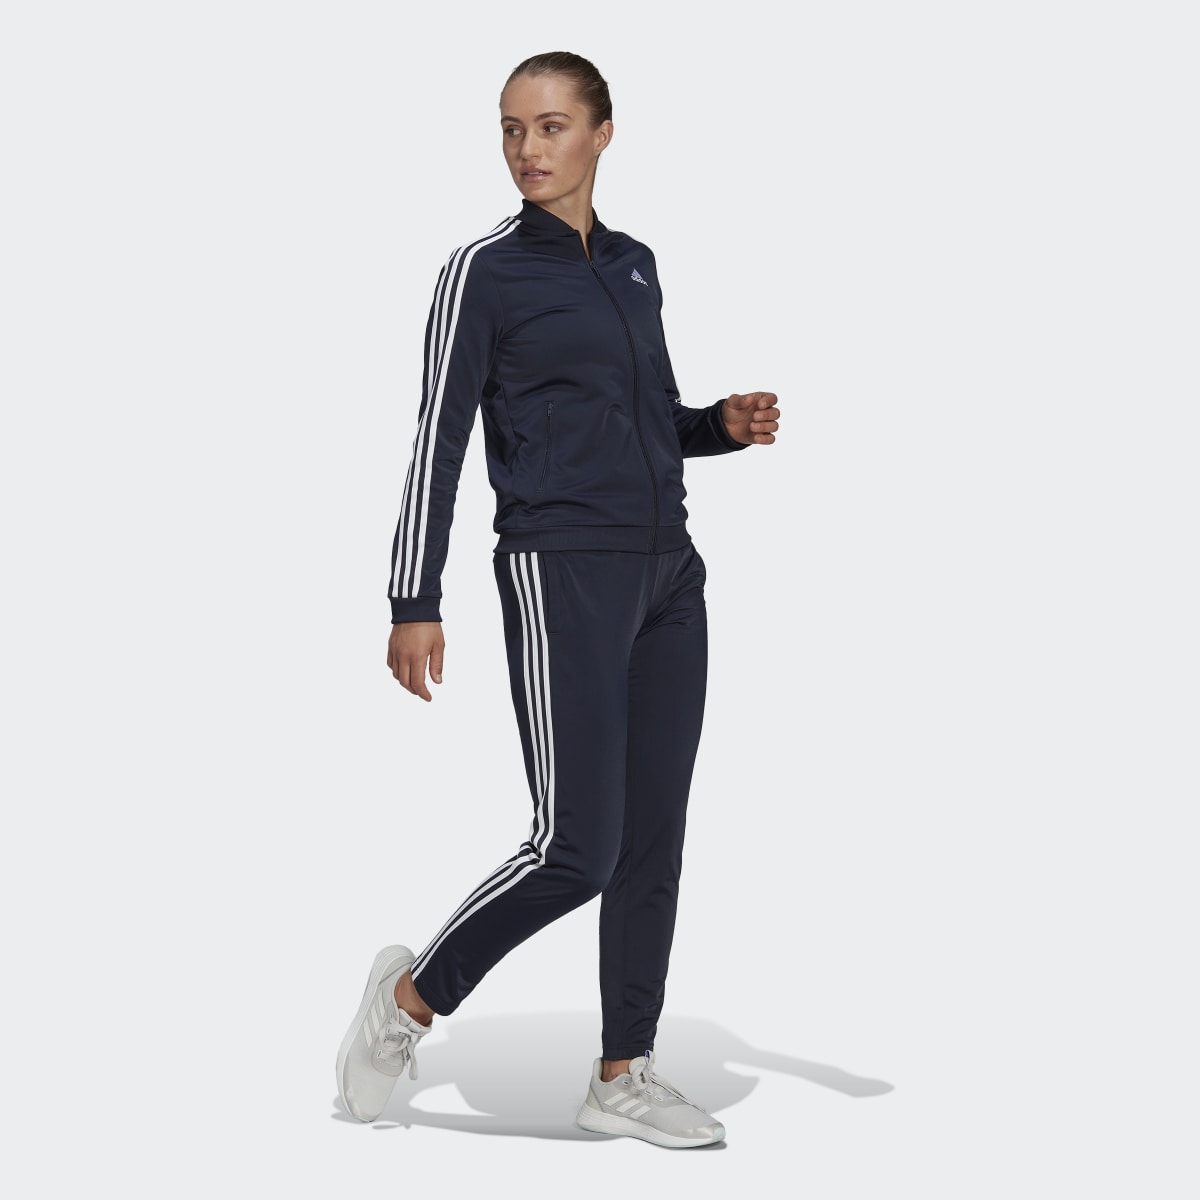 Adidas Essentials 3-Streifen Trainingsanzug. 4